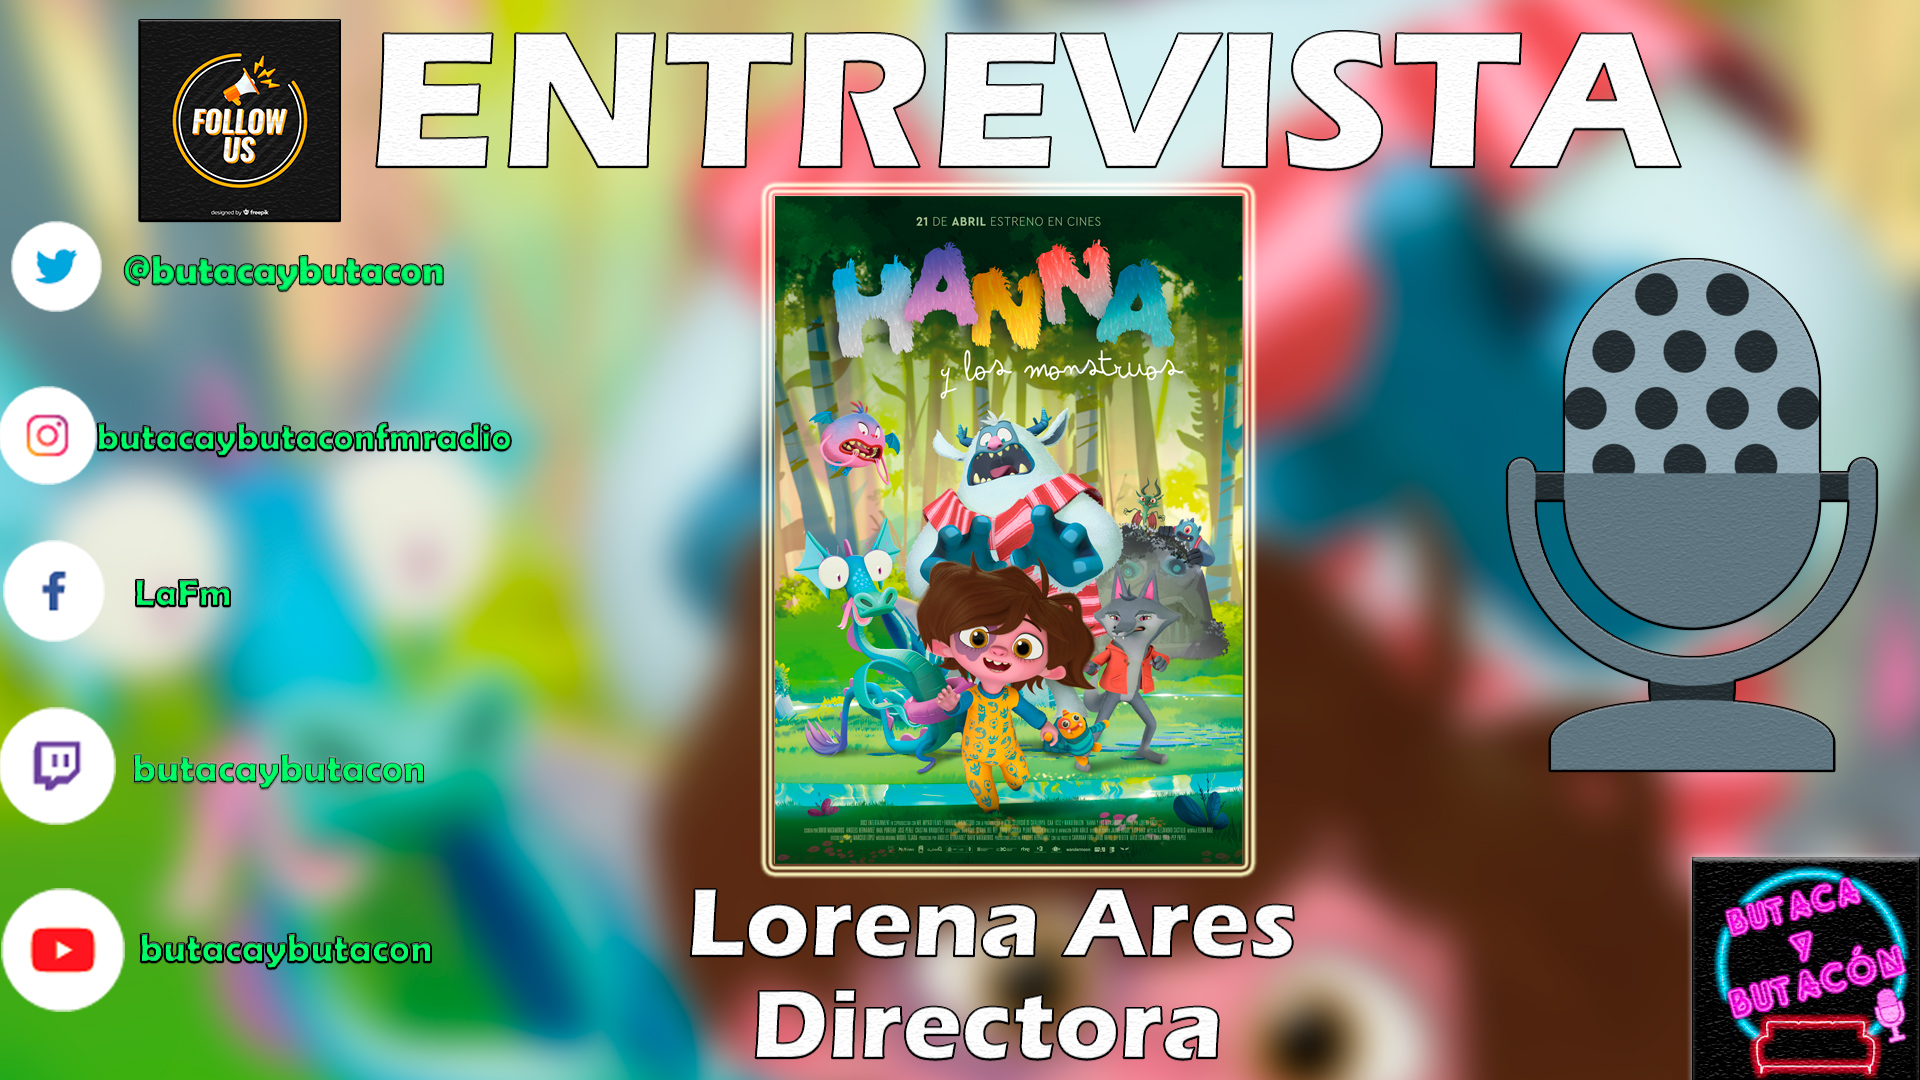 Lorena Ares: "La animación siempre es un viaje a través de los sueños y emociones"